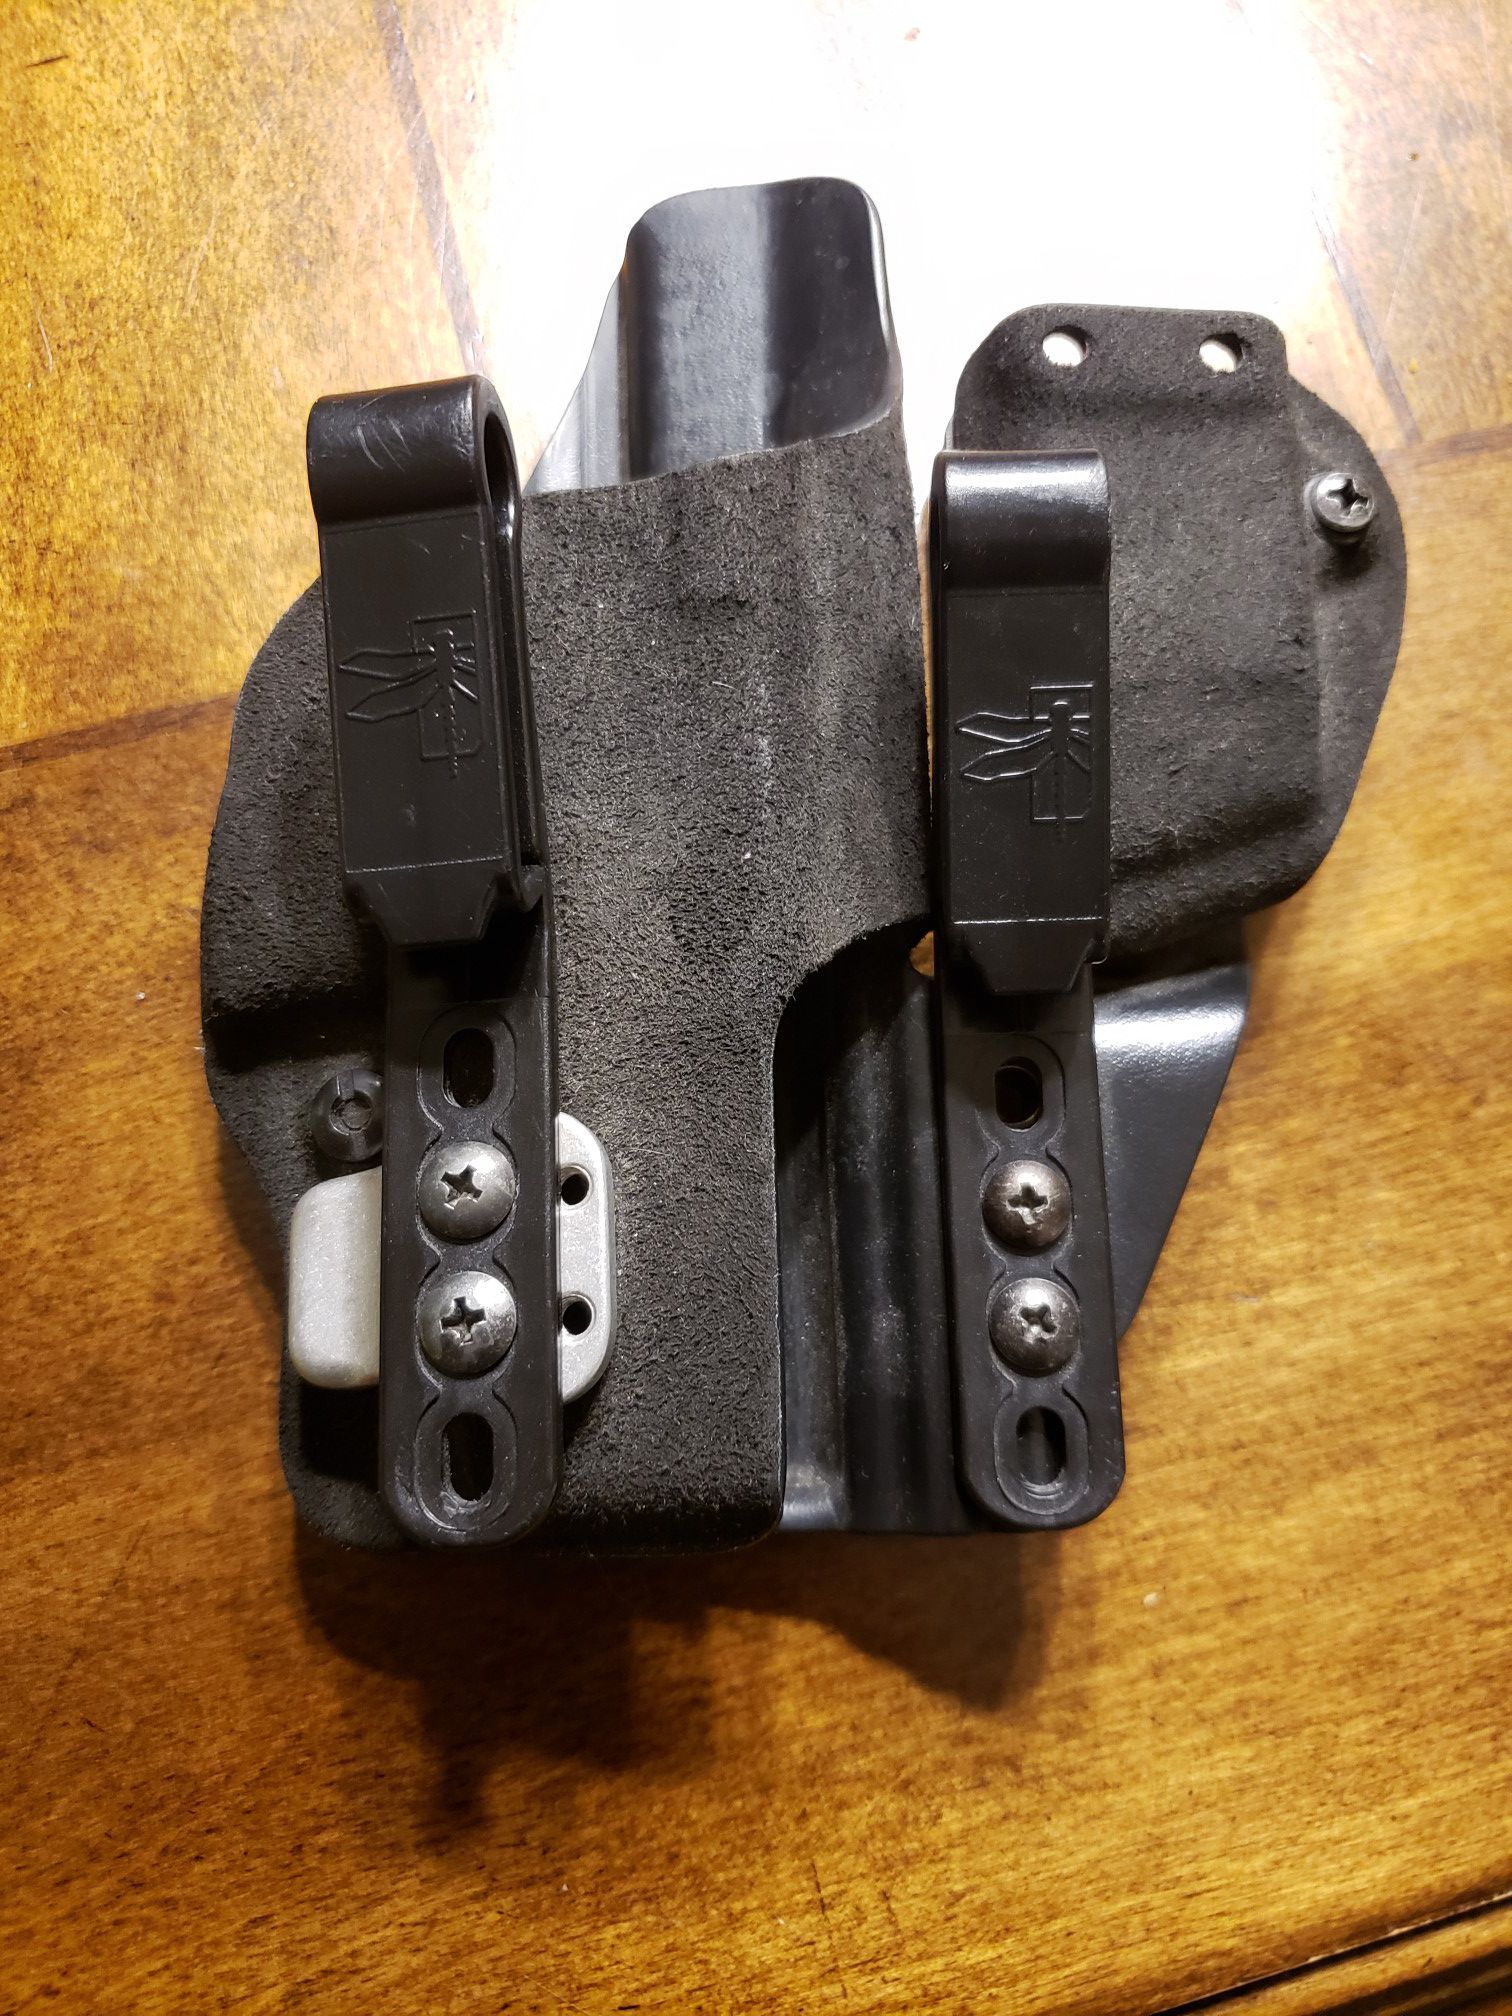 Gcode incog holster for glock